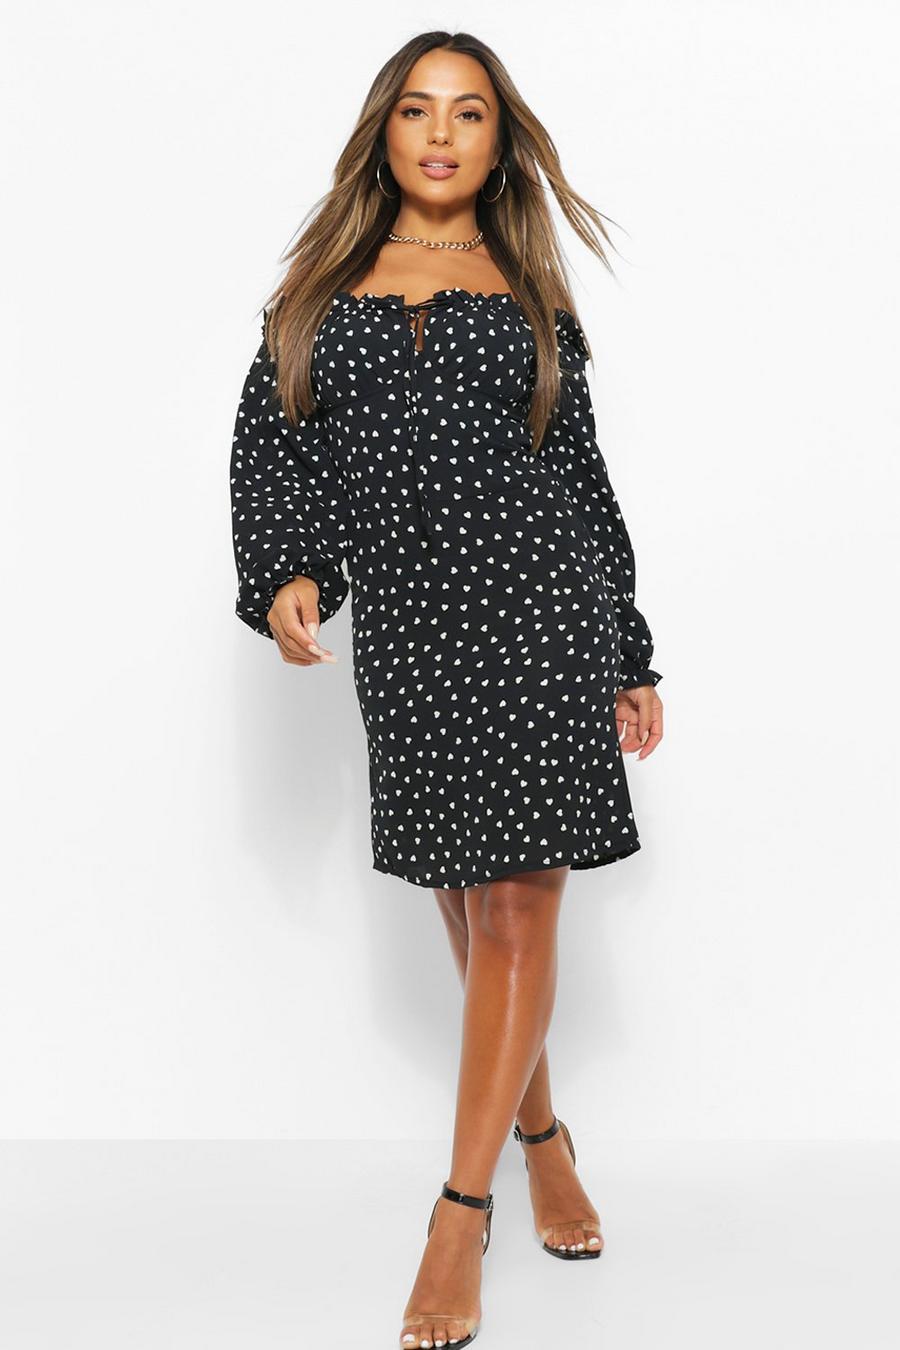 שחור שמלת שיפט פטיט עם צווארון מסולסל, קשר מלפנים והדפס לבבות image number 1